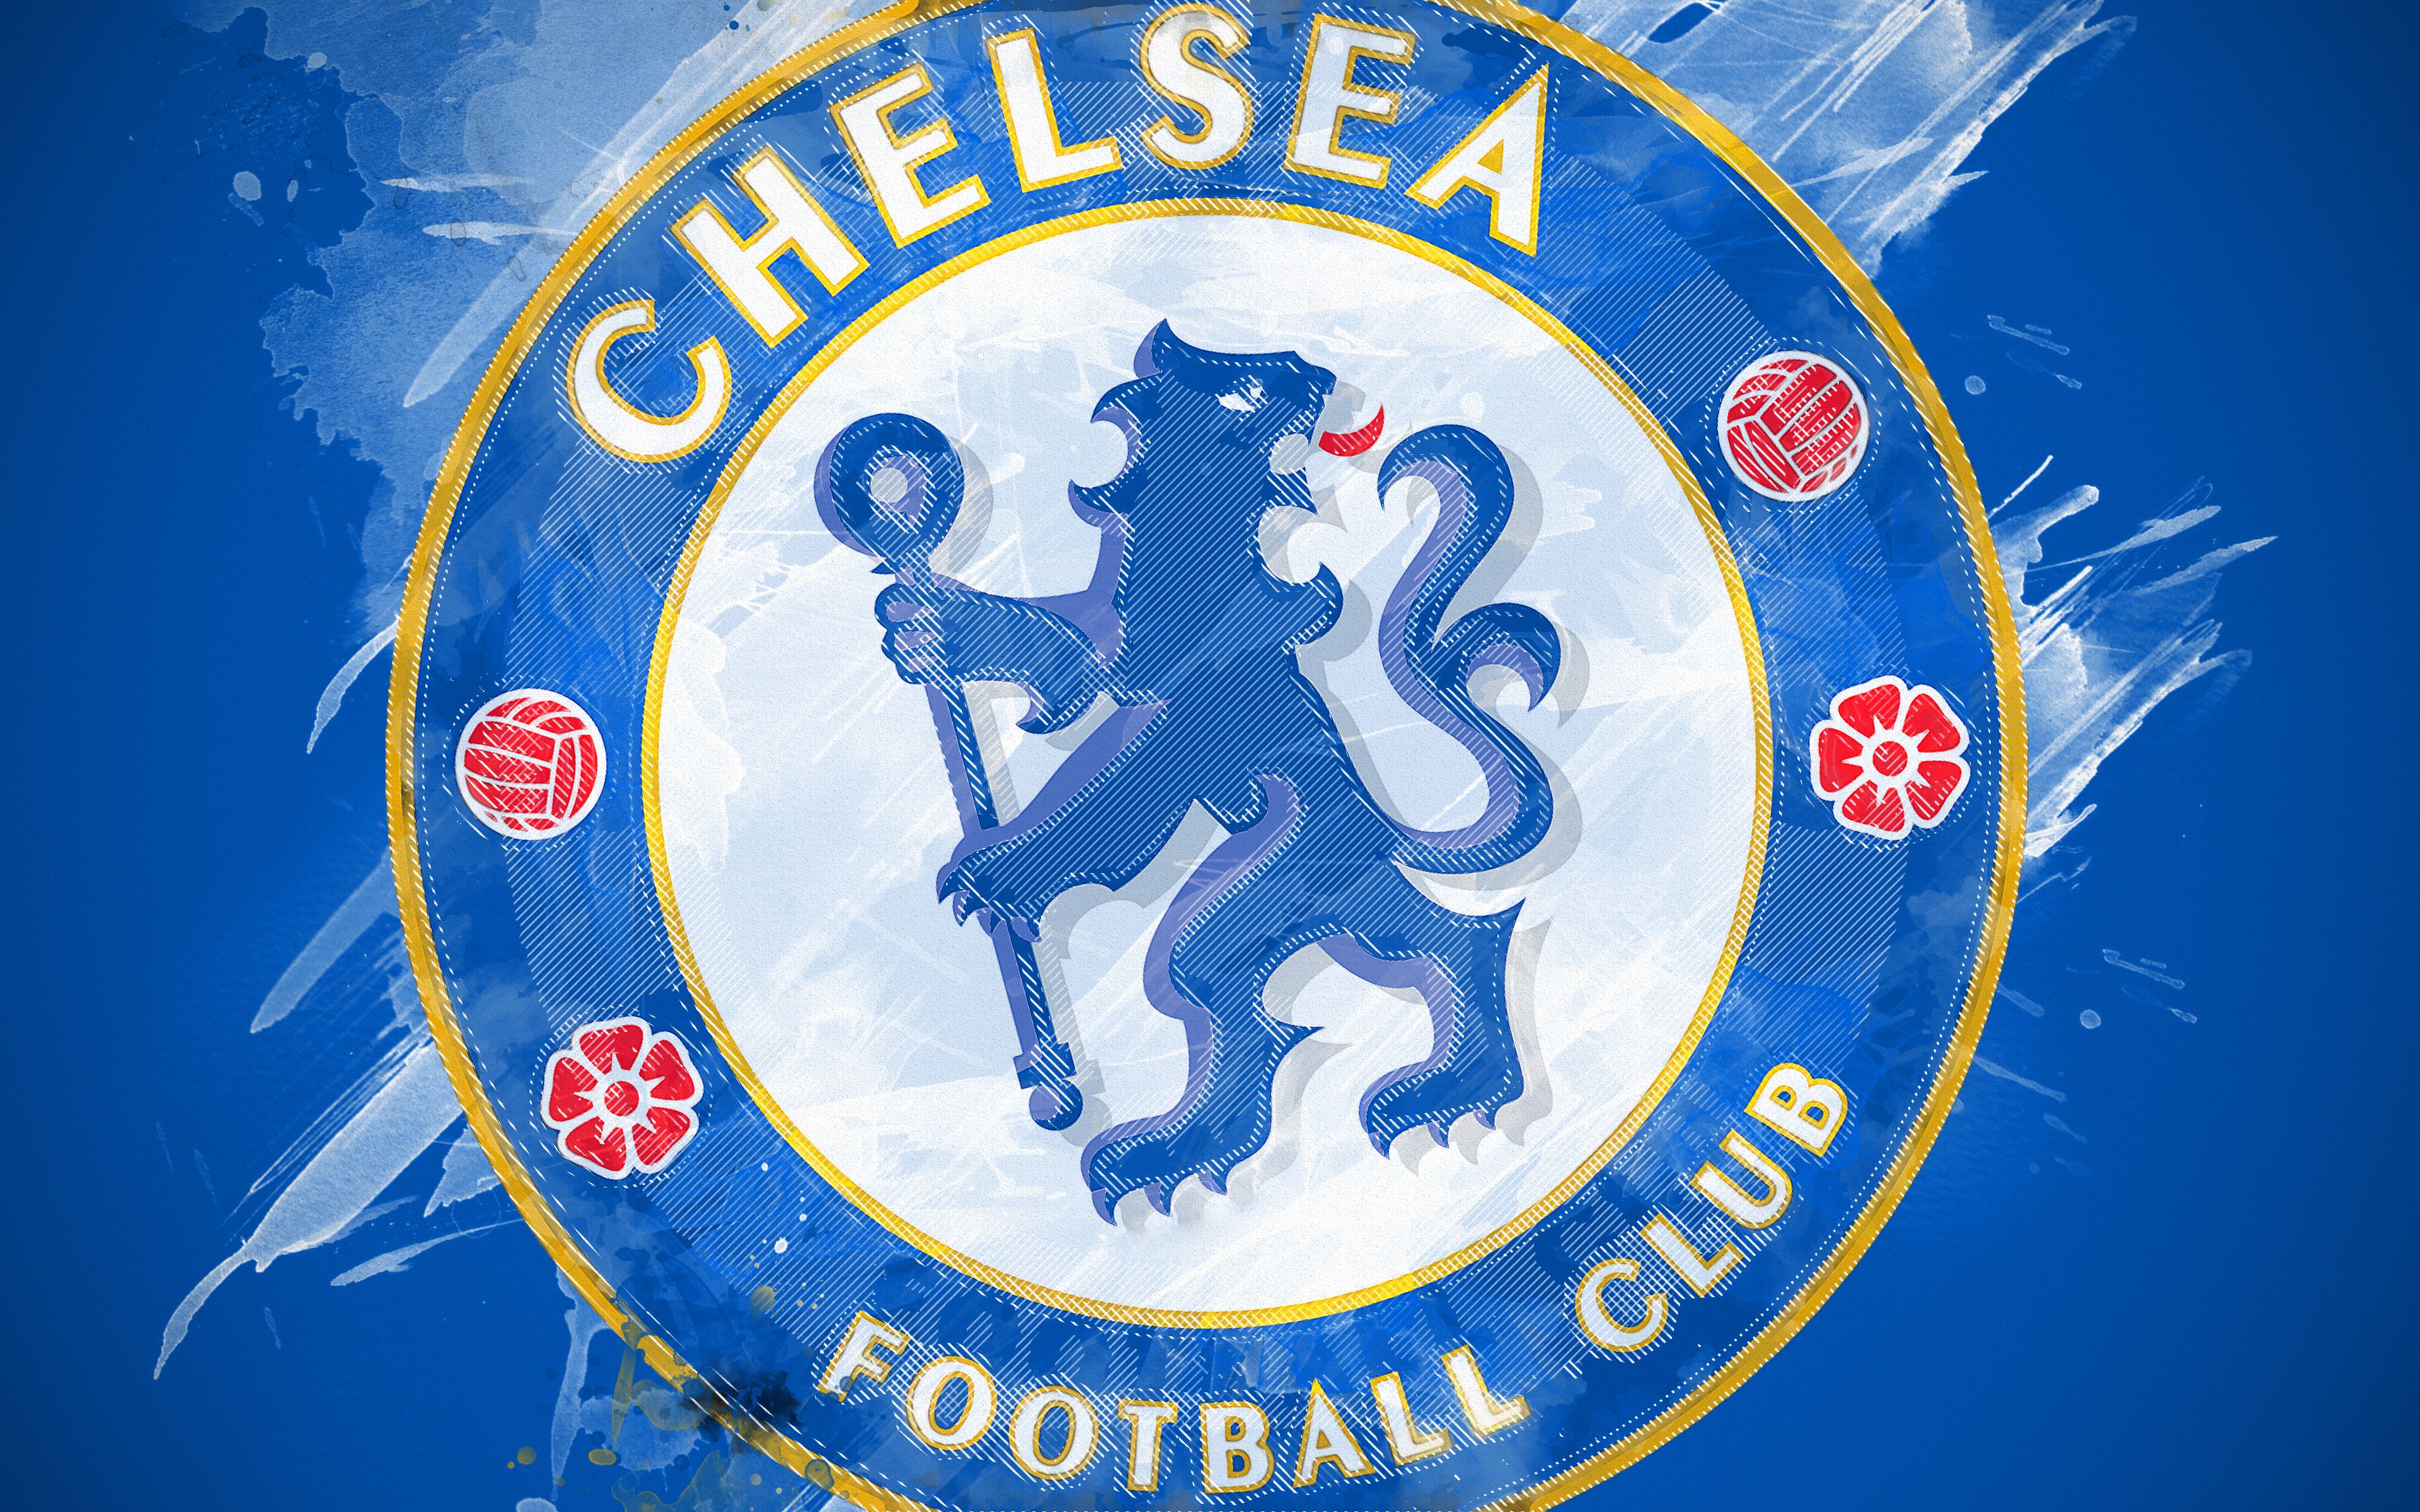 Chelsea Logo 4k Ultra HD Wallpaper